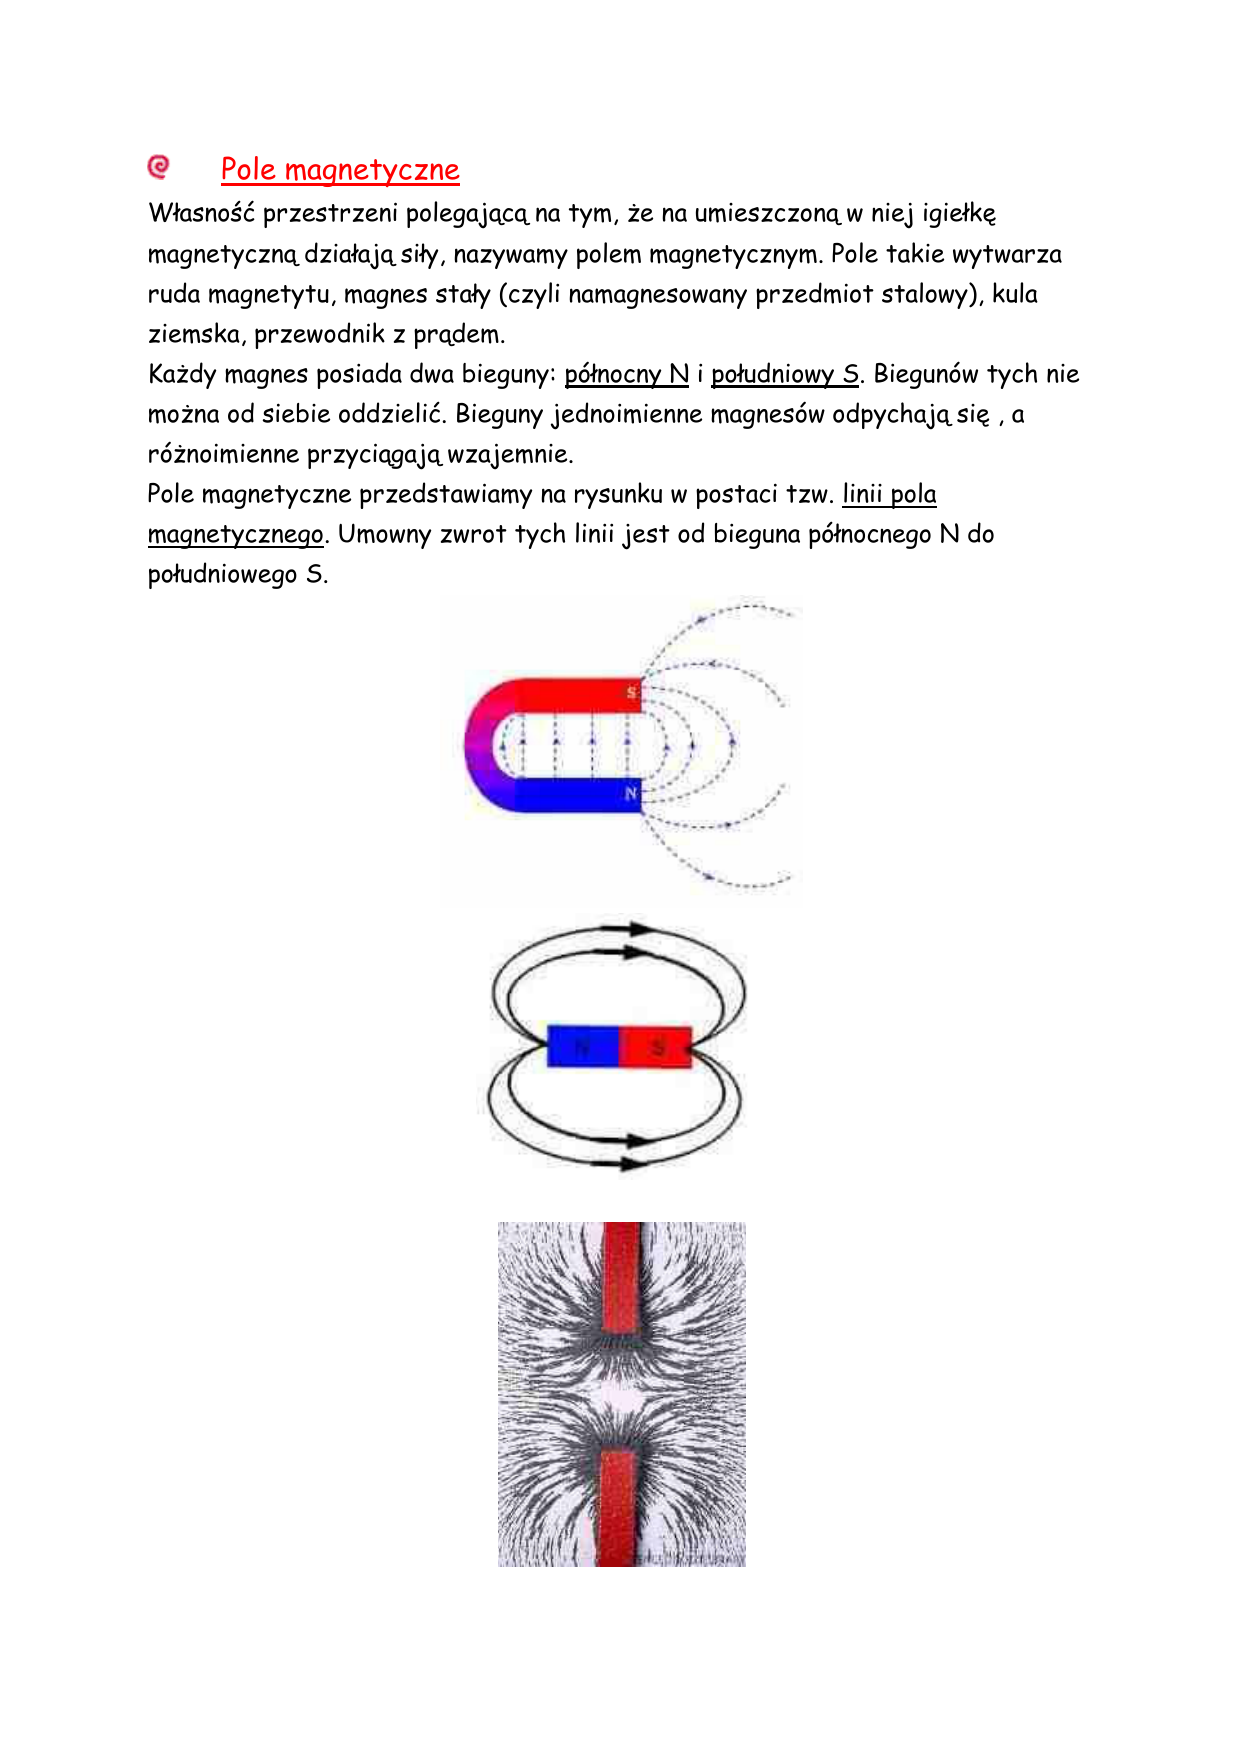 Pole Magnetyczne Wytwarza Wokol Siebie Pole magnetyczne